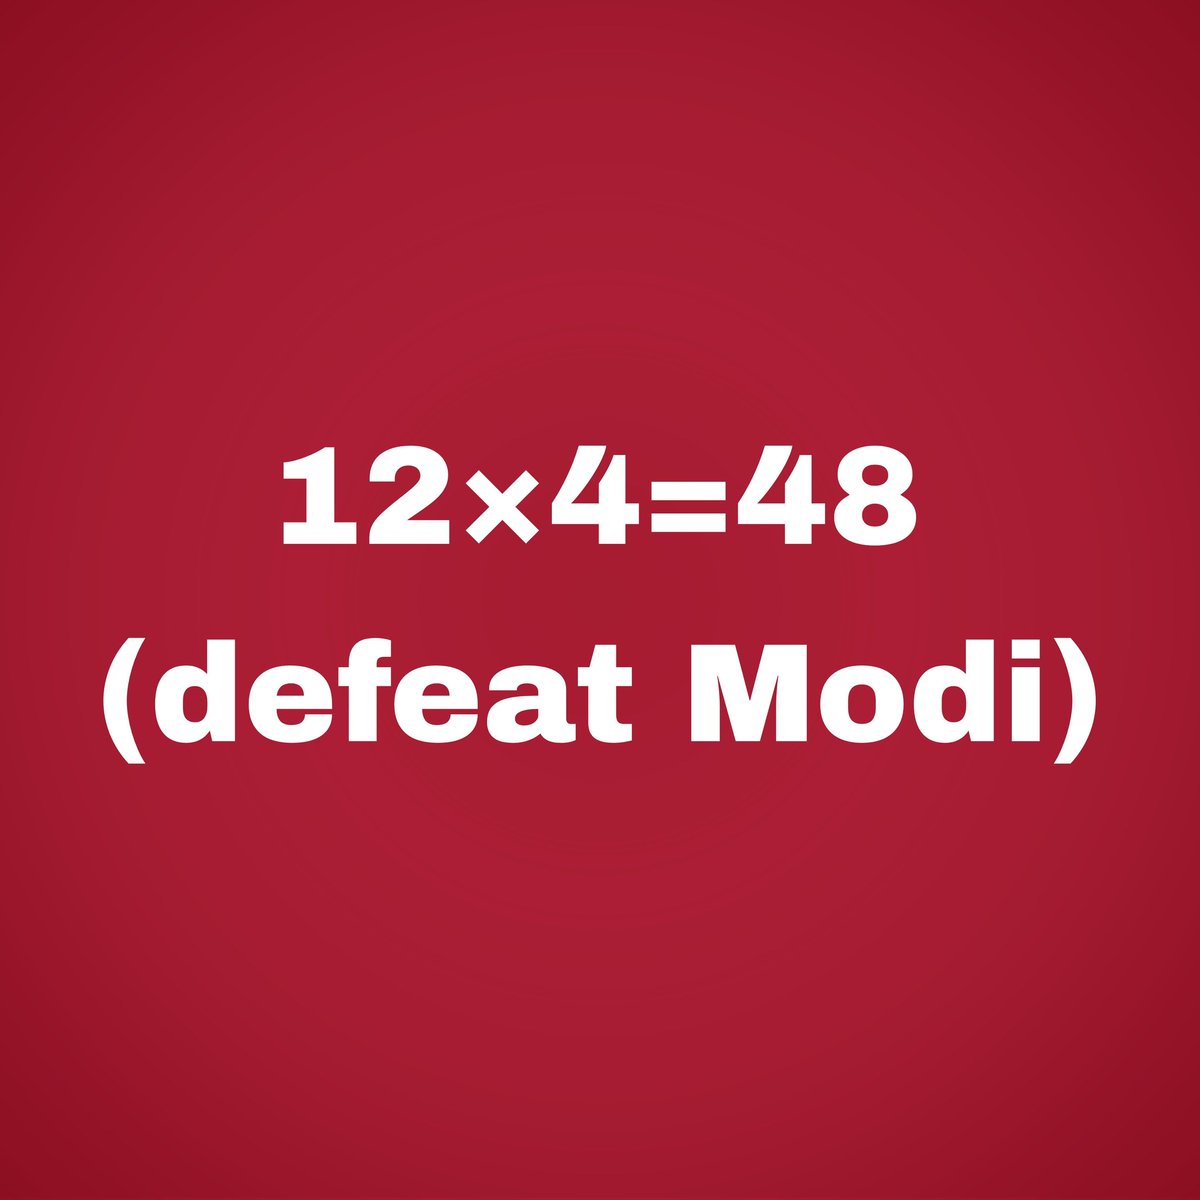 अगर कांग्रेस और एनसीपी सच में मोदी को हराना चाहते हैं तो उन्हें वंचित बहुजन अघाड़ी के फॉर्मूले पर काम करना चाहिए.
12×4=48 (defeat Modi)

#LoksabhaElection2024 #defeatmodi 
#VBAforindia @VBAforIndia